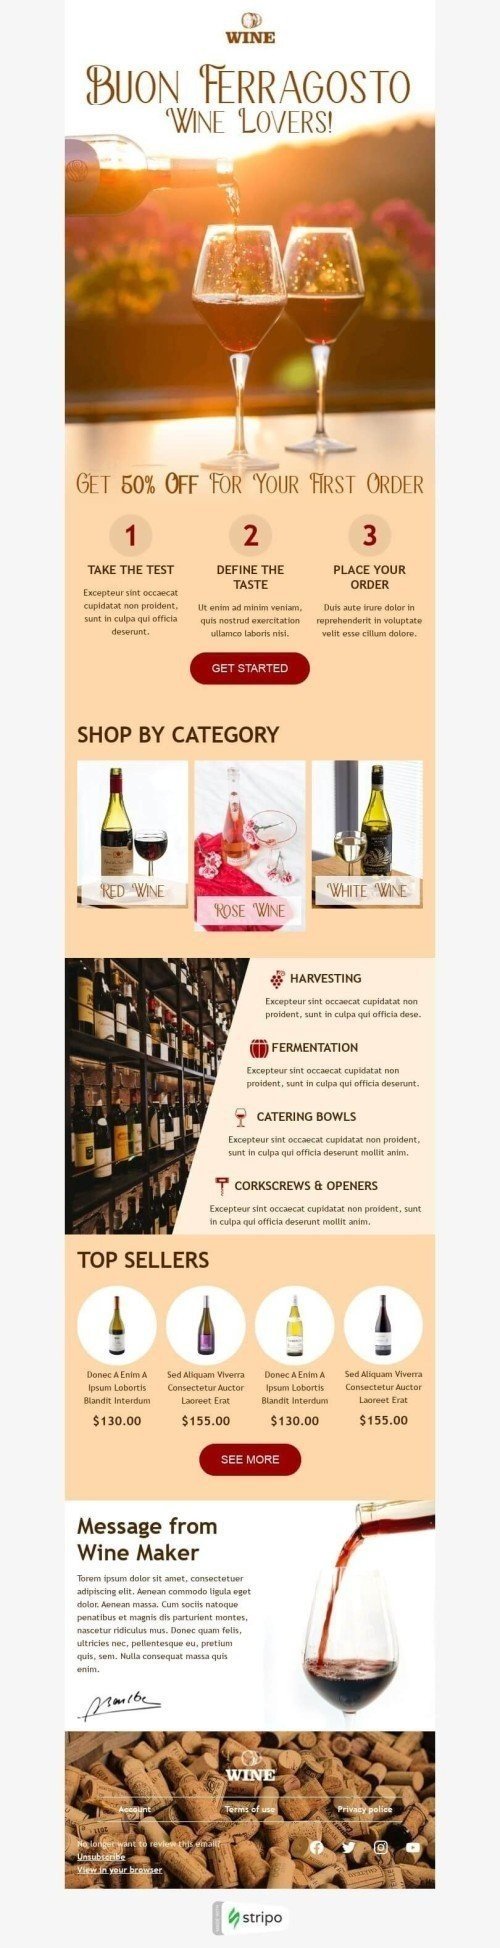 Plantilla de correo electrónico «Mensaje de Wine Maker» de Ferragosto para la industria de Bebidas Vista de móvil